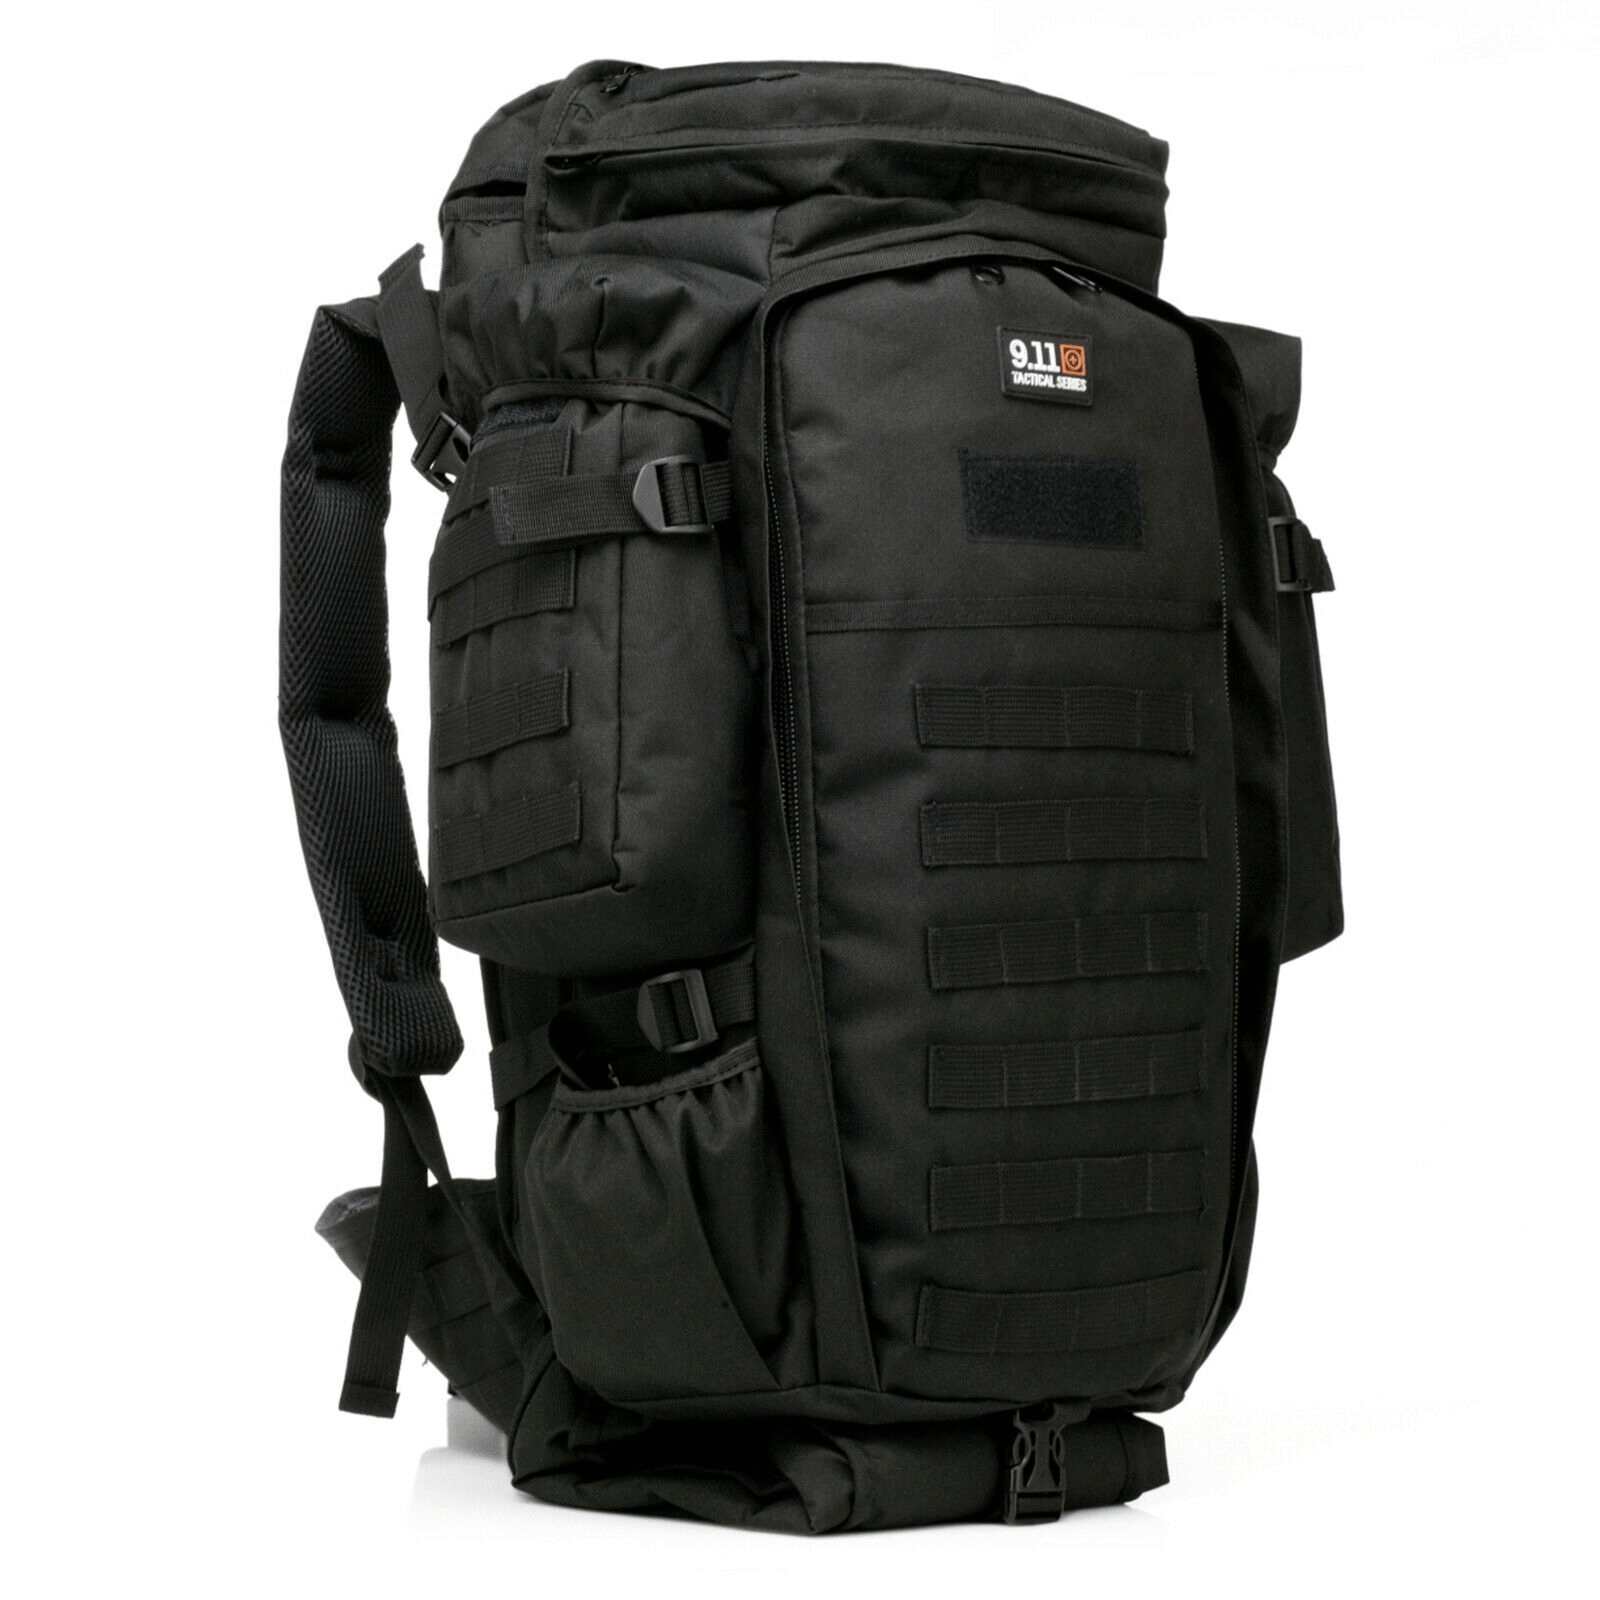 Black 911 MOLLE Tactical Backpack Waterproof Hunting Bag